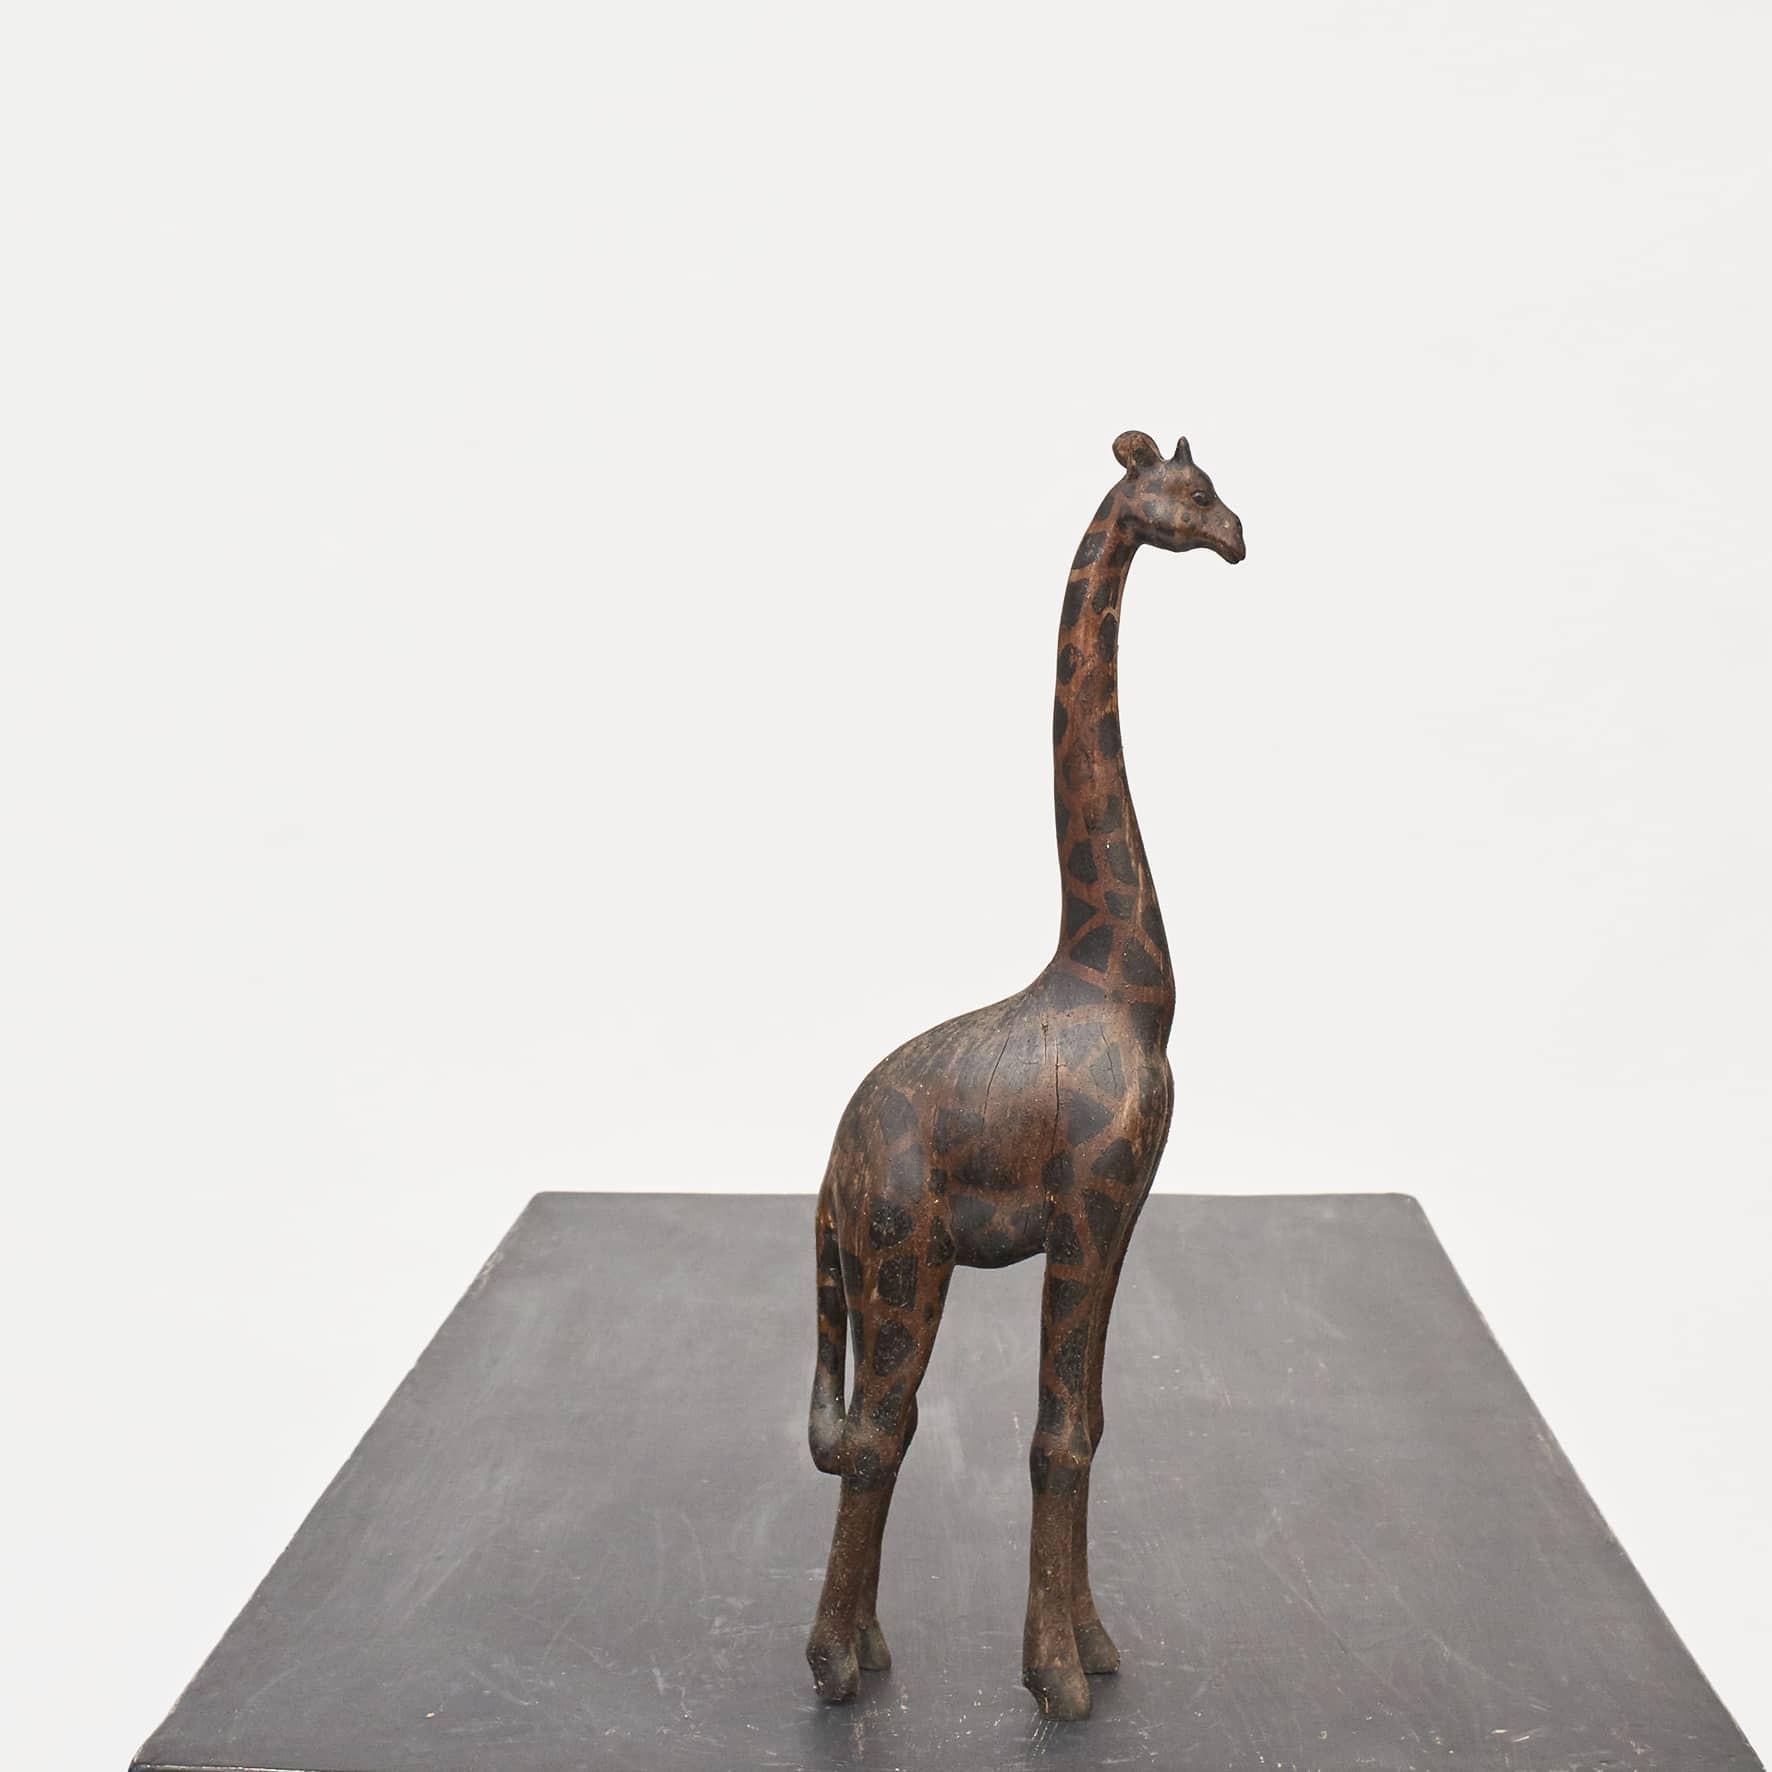 Eine charmante Vintage-Giraffe aus Holz. Handgeschnitzt aus Hartholz (Tropenholz) mit braun und schwarz lackierter Oberfläche.
Aus Afrika, ca. 50-100 Jahre alt.
In originalem Vintage-Zustand, mit leichten alters- und gebrauchsbedingten